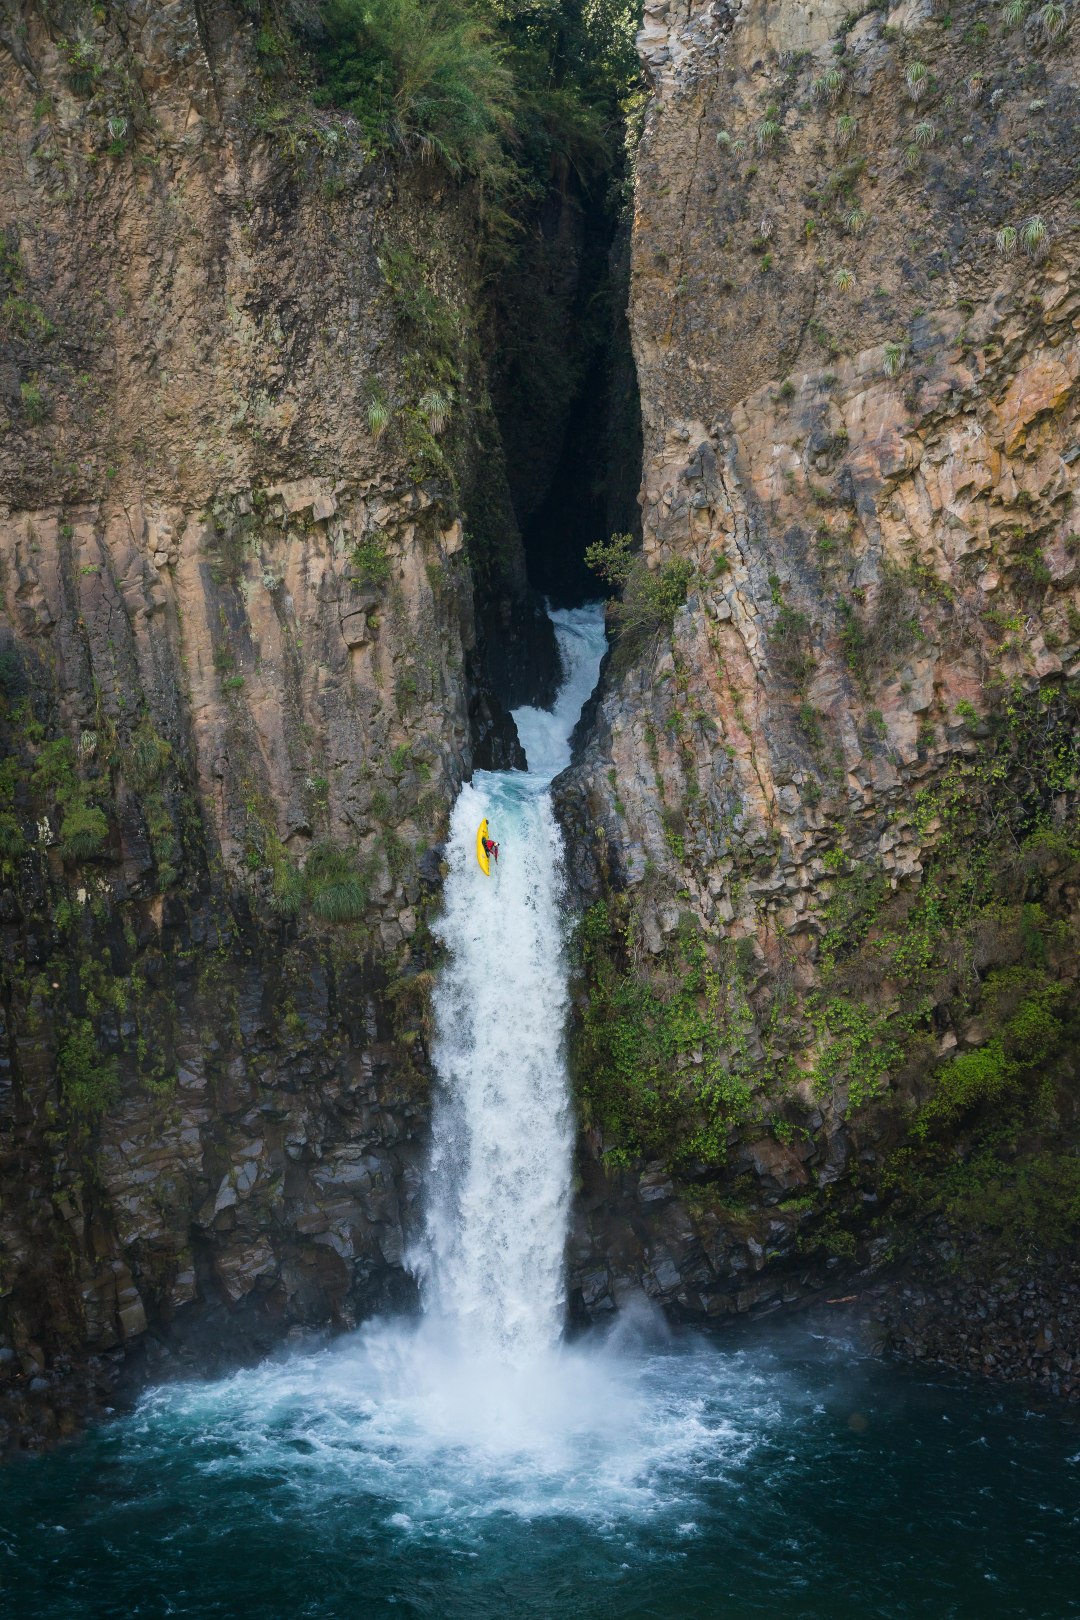 Aniol Serrasolses na cascata de La Leona, rio limpo, zona do Maule.